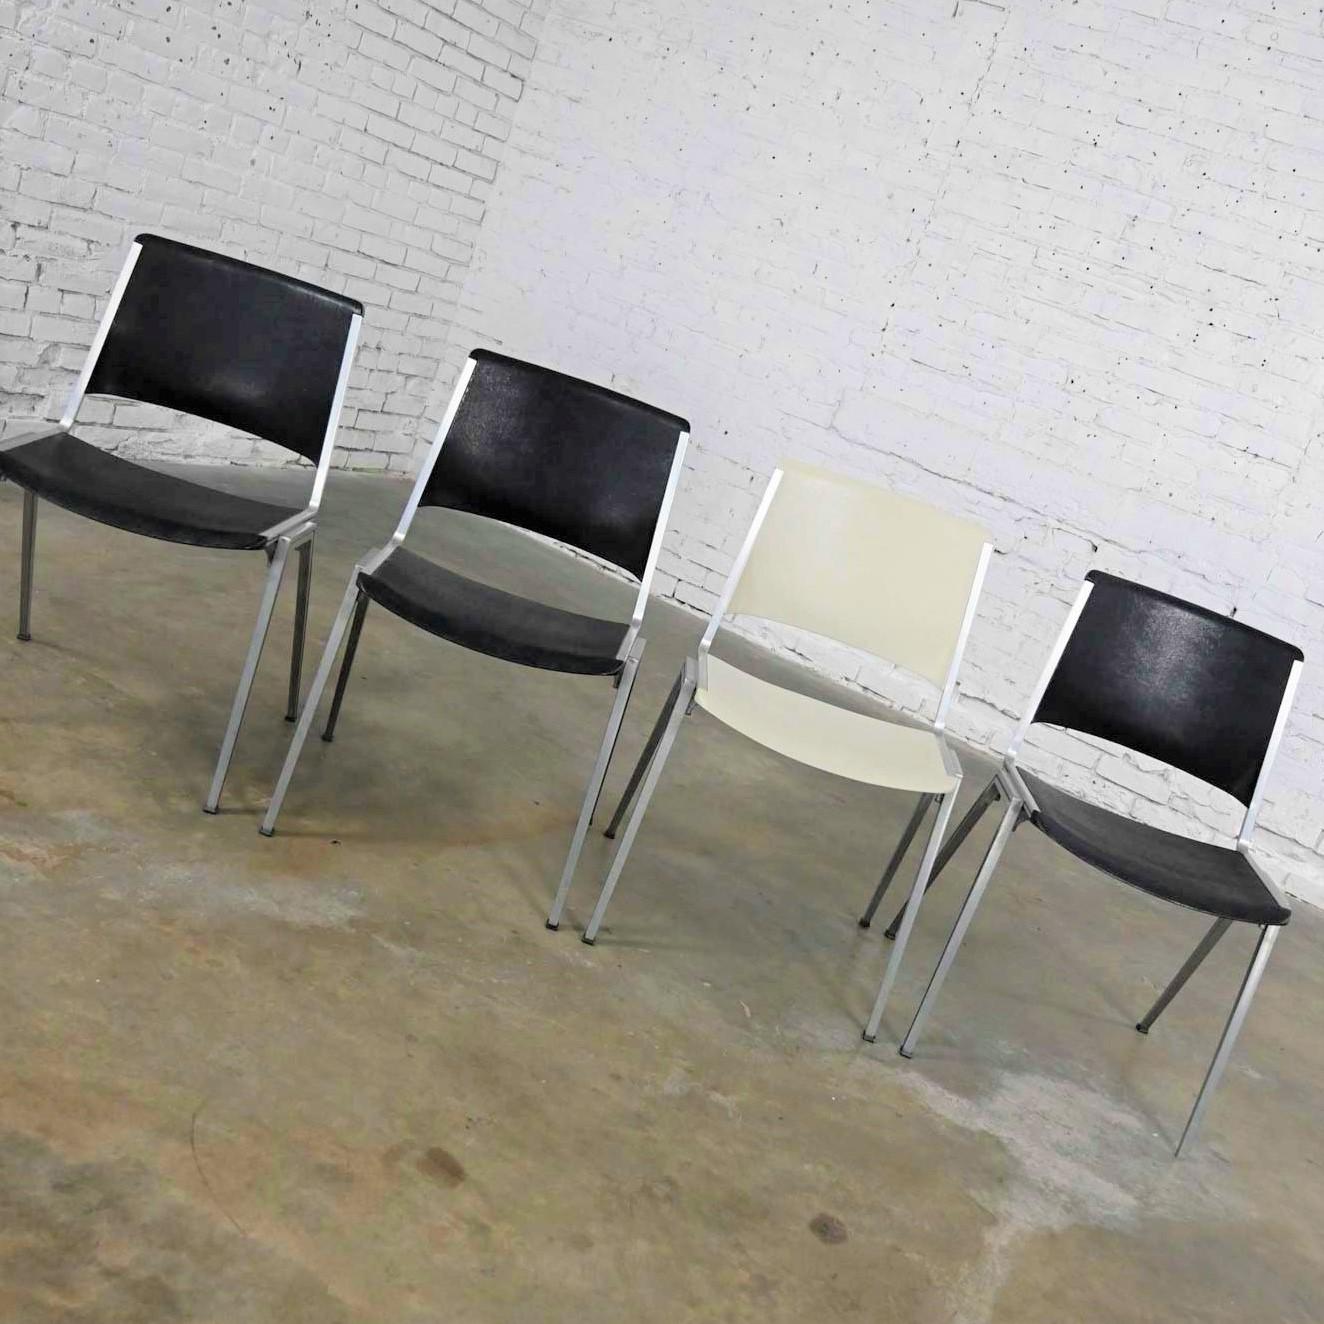 Superbes chaises empilables vintage Steelcase, modèle #1278, 1 blanche et 1 noire, ensemble de 4 chaises. Composé de cadres en aluminium extrudé et de sièges et dossiers en plastique moulé. Belle condition, en gardant à l'esprit qu'il s'agit d'un